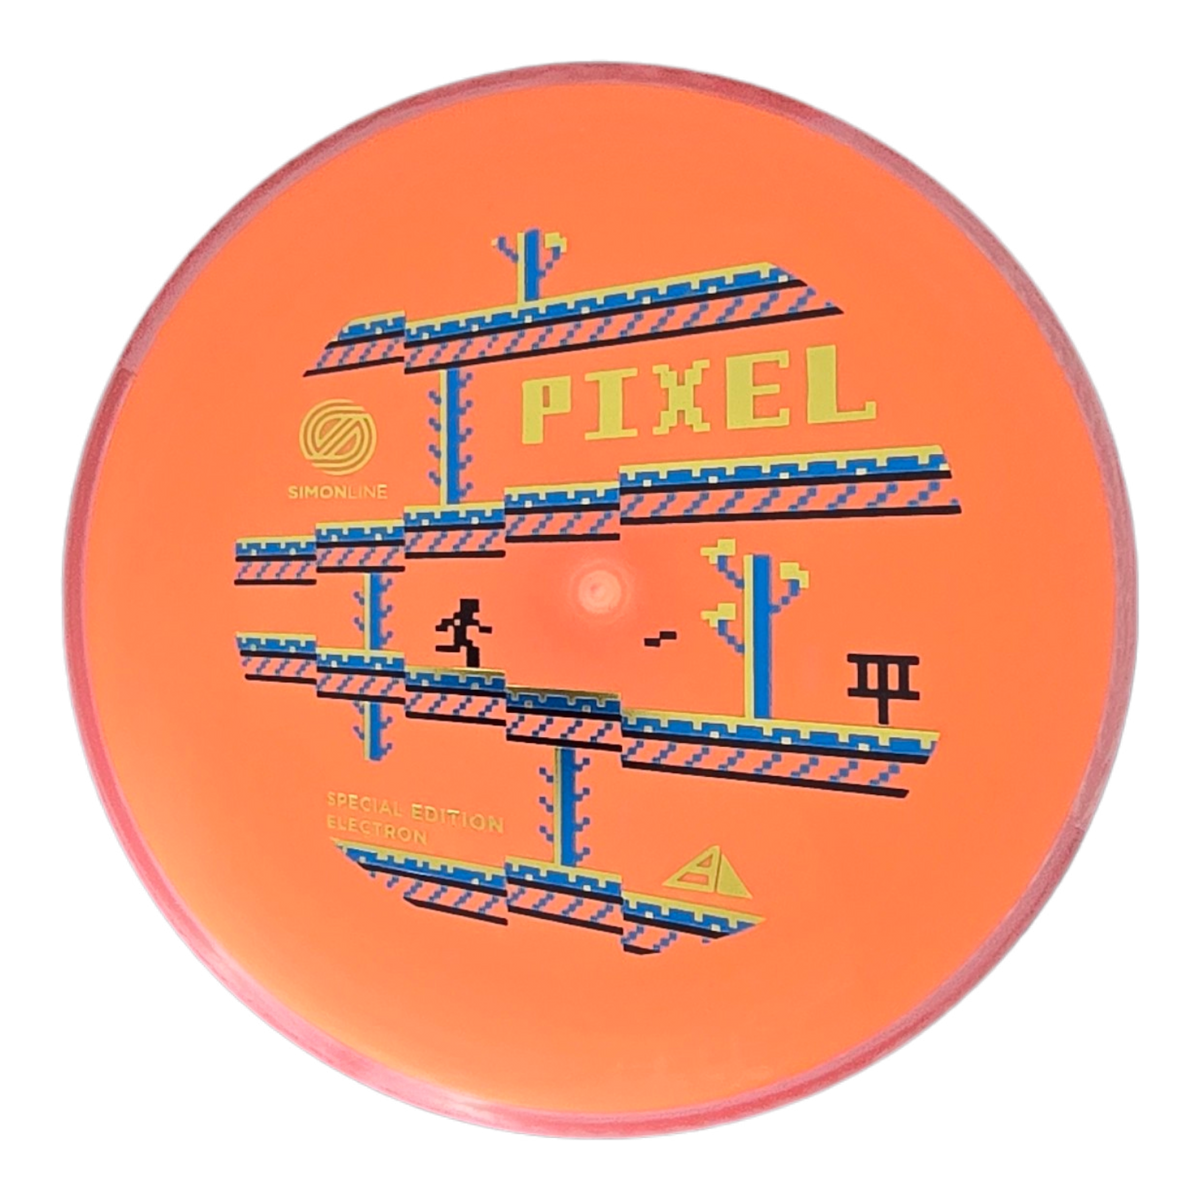 Axiom Simon Lizotte Simon Line Electron (Medium) Pixel - Special Edition